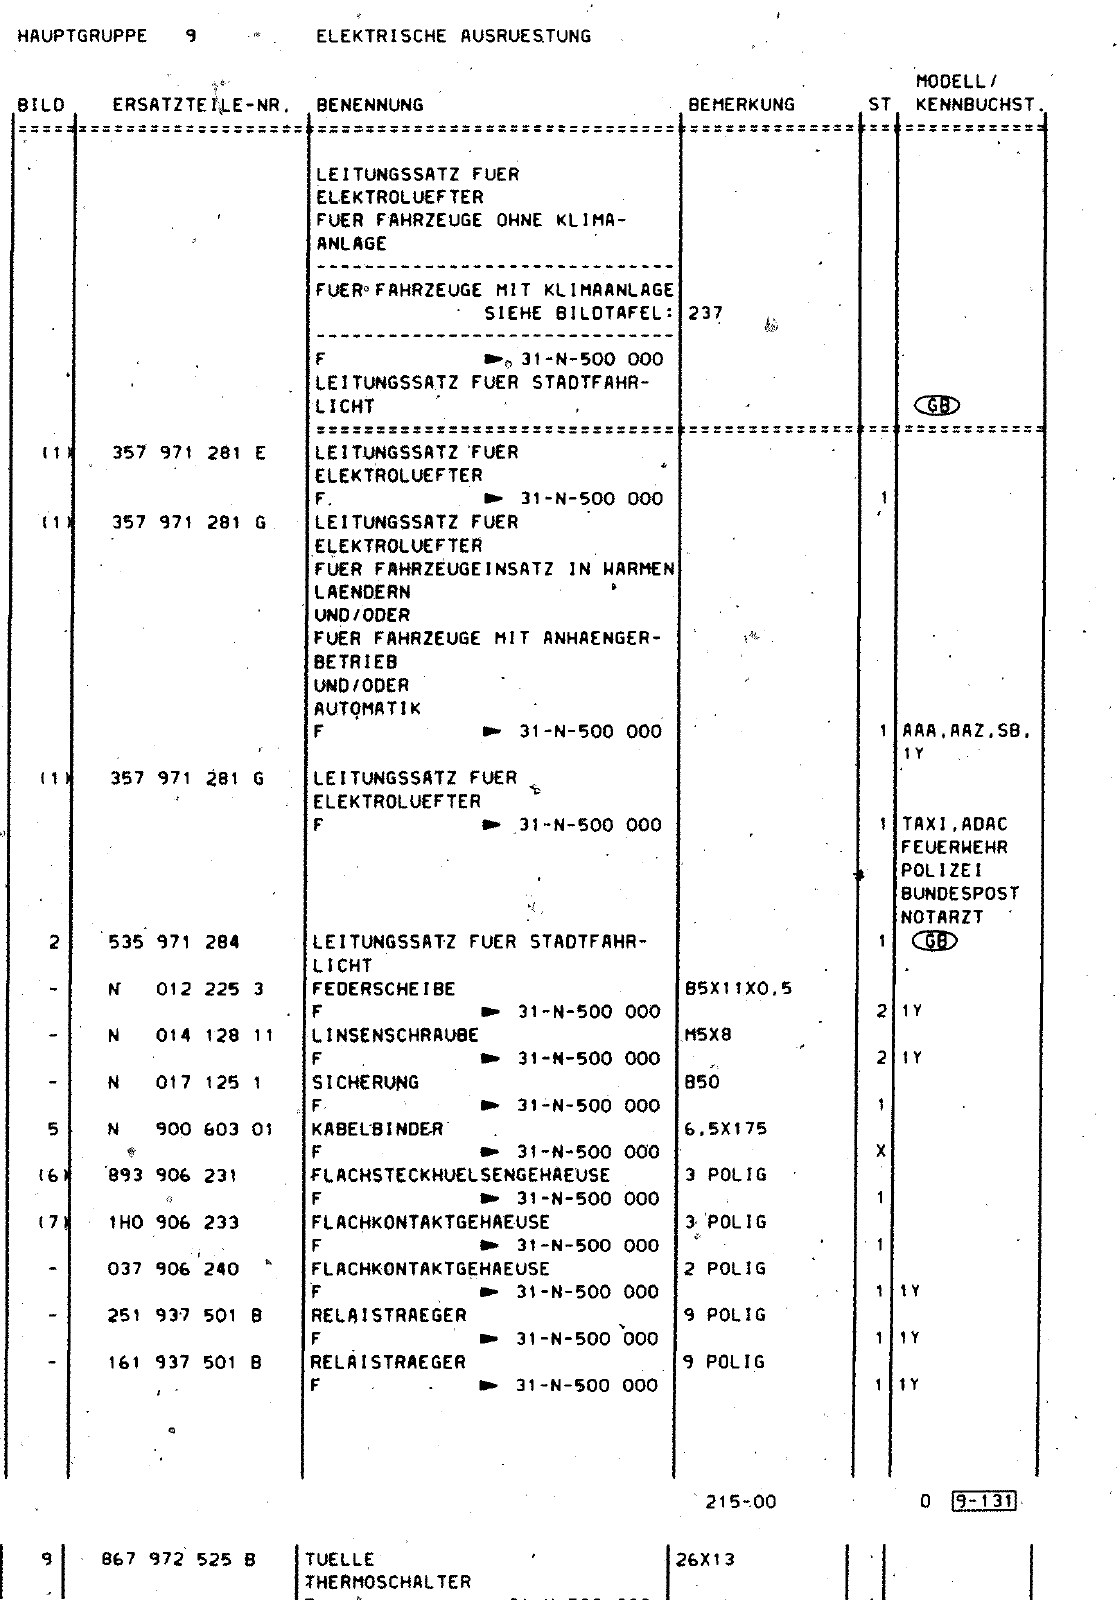 Vorschau Passat Mod 92-93 Seite 1164